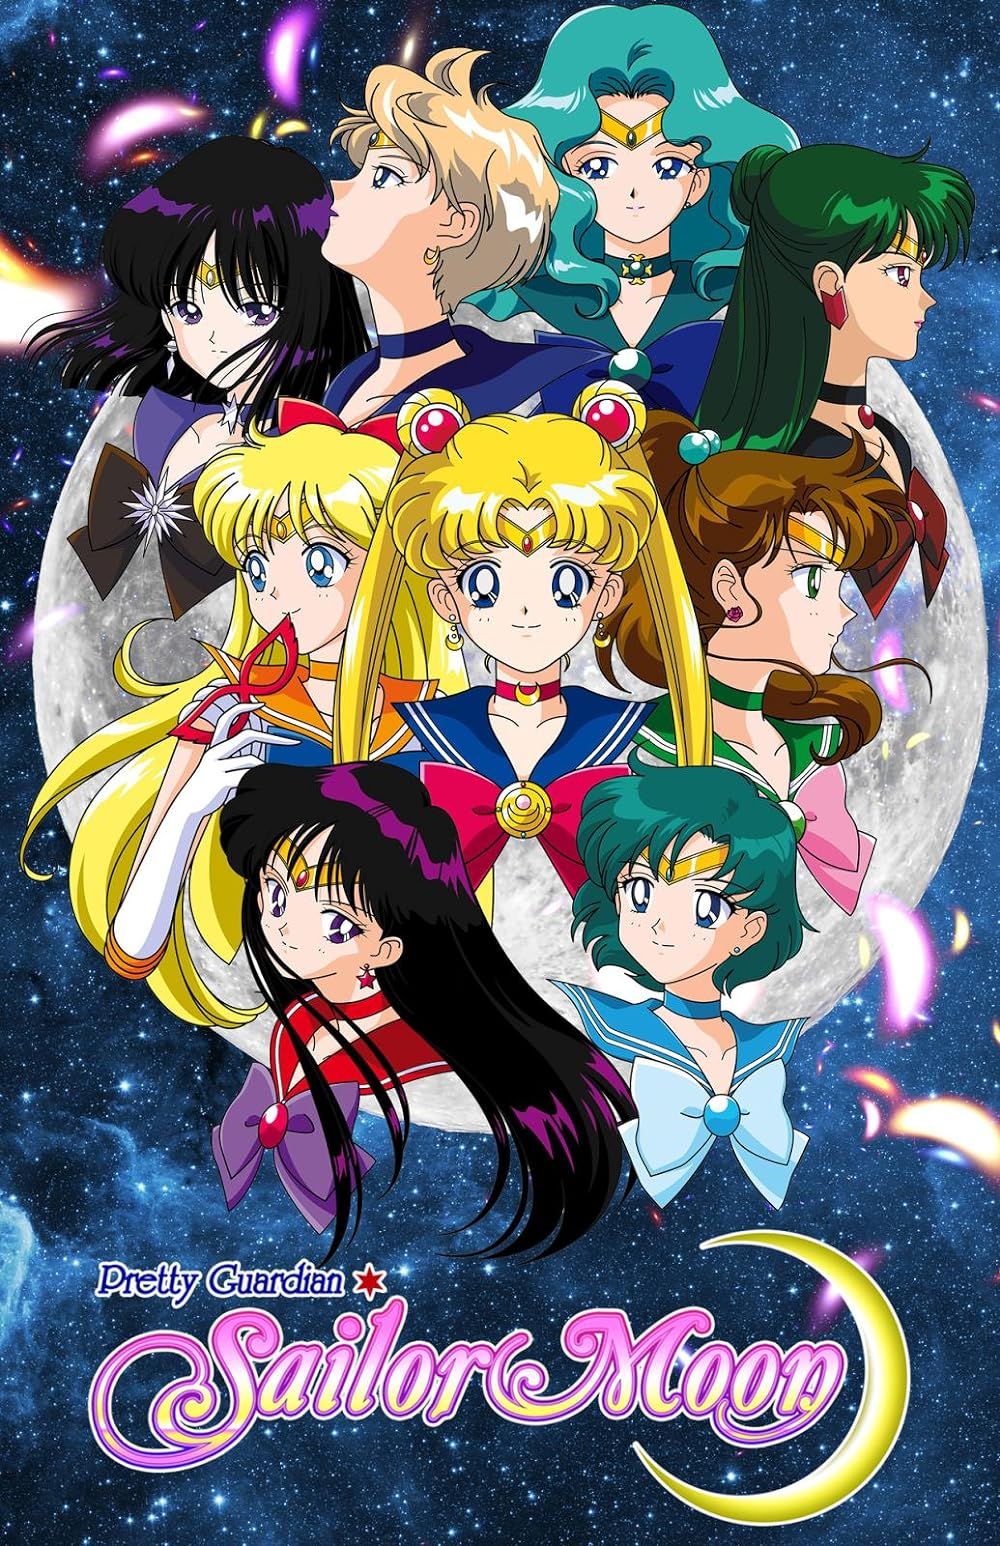 Sailor Moon, Usagi Tsukino, Ami Mizuno, Ami Mizuno, Rei Hino and Rei Hino in the anime tv series Sailor Moon